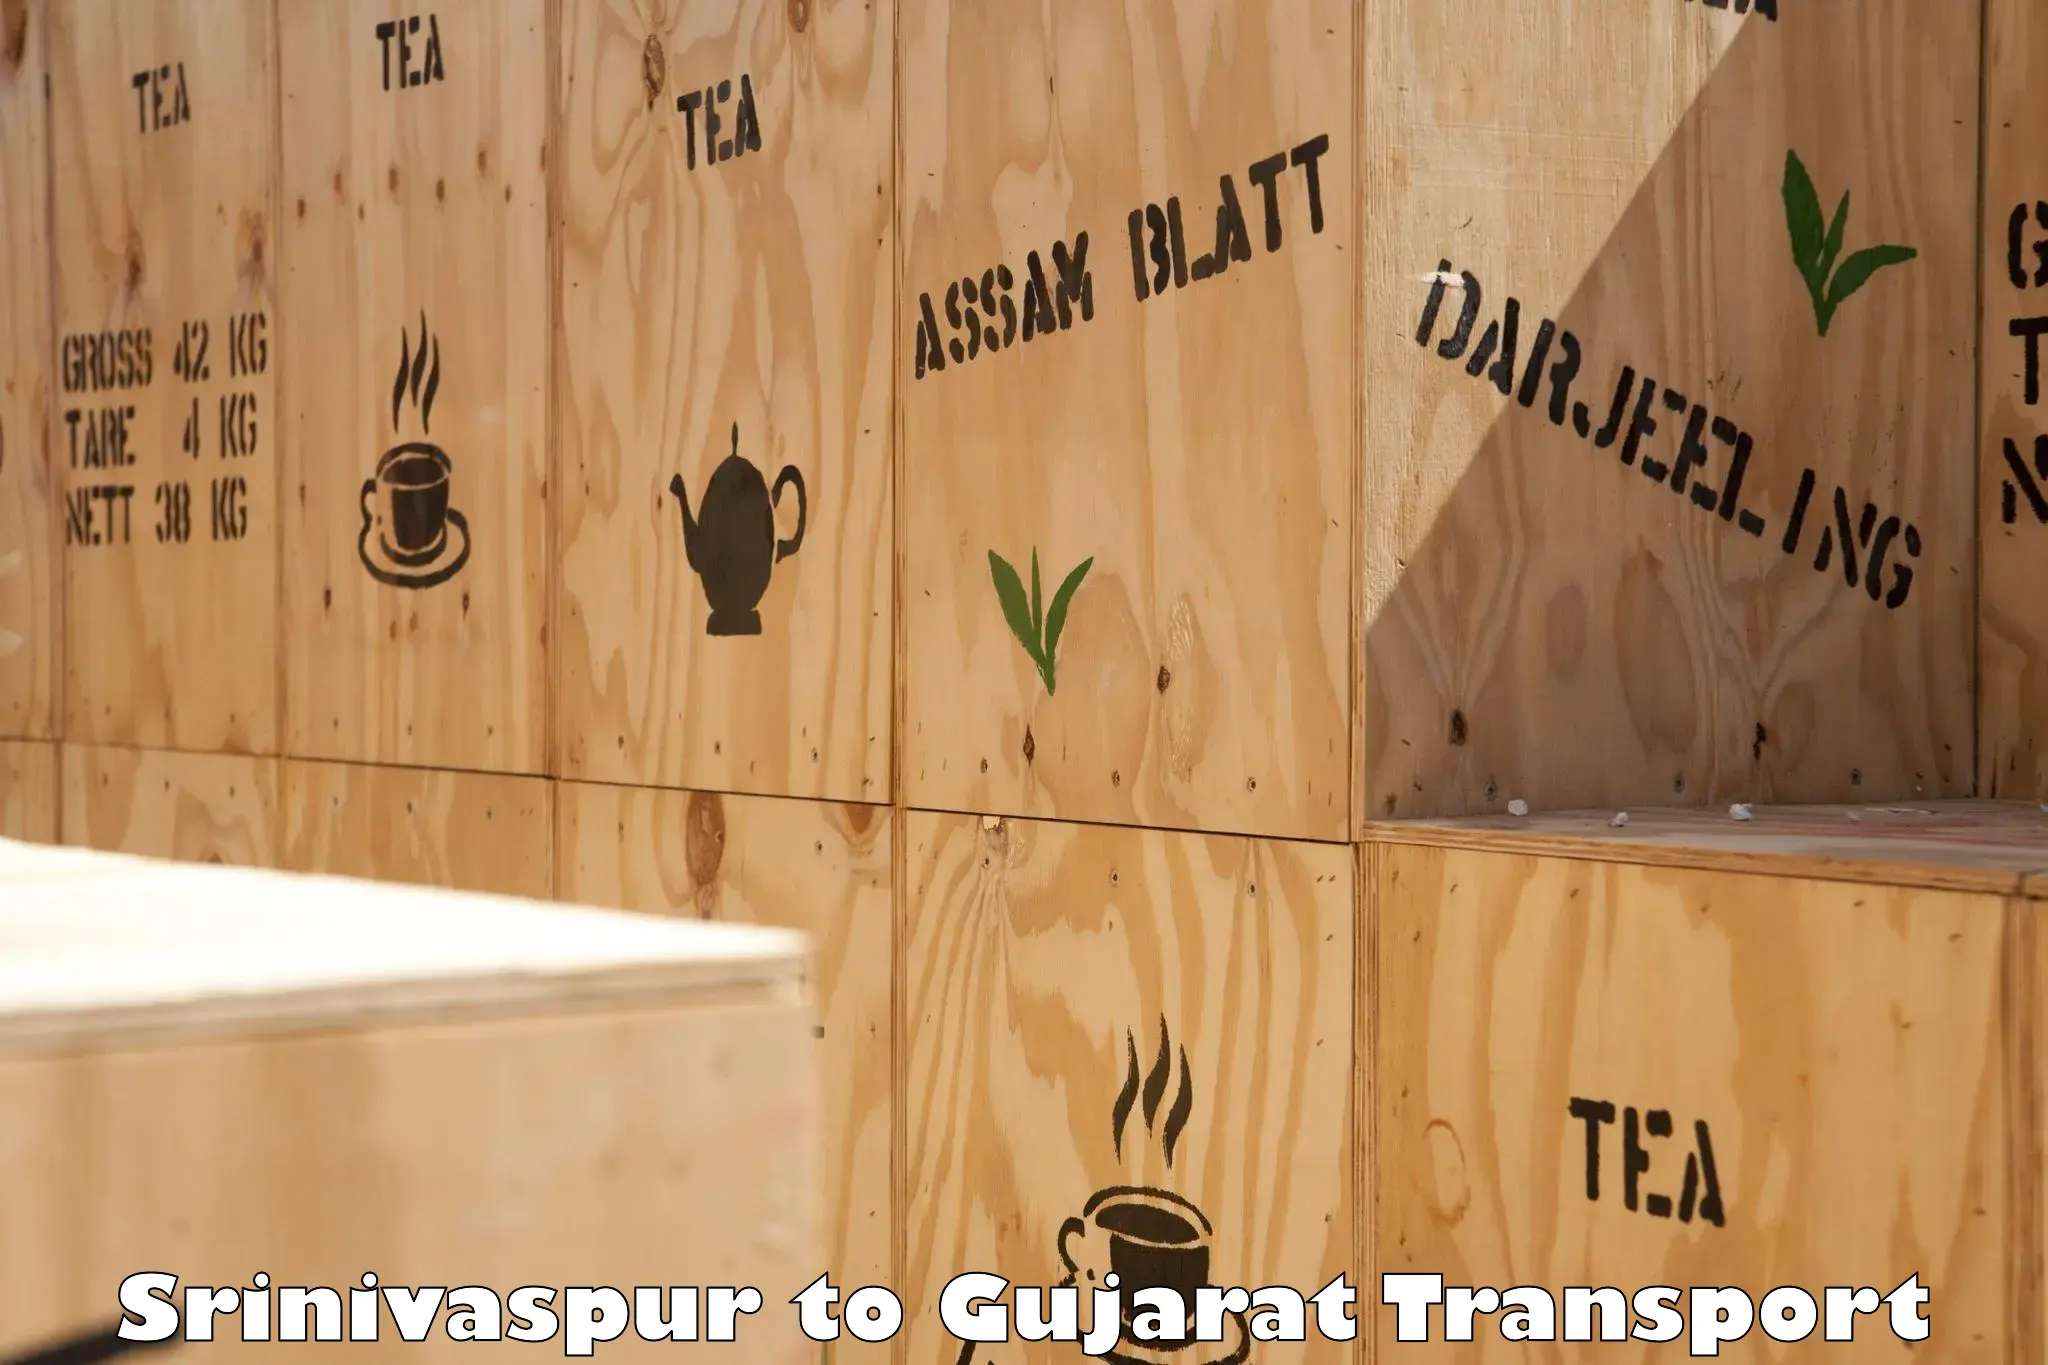 Daily transport service Srinivaspur to Gujarat